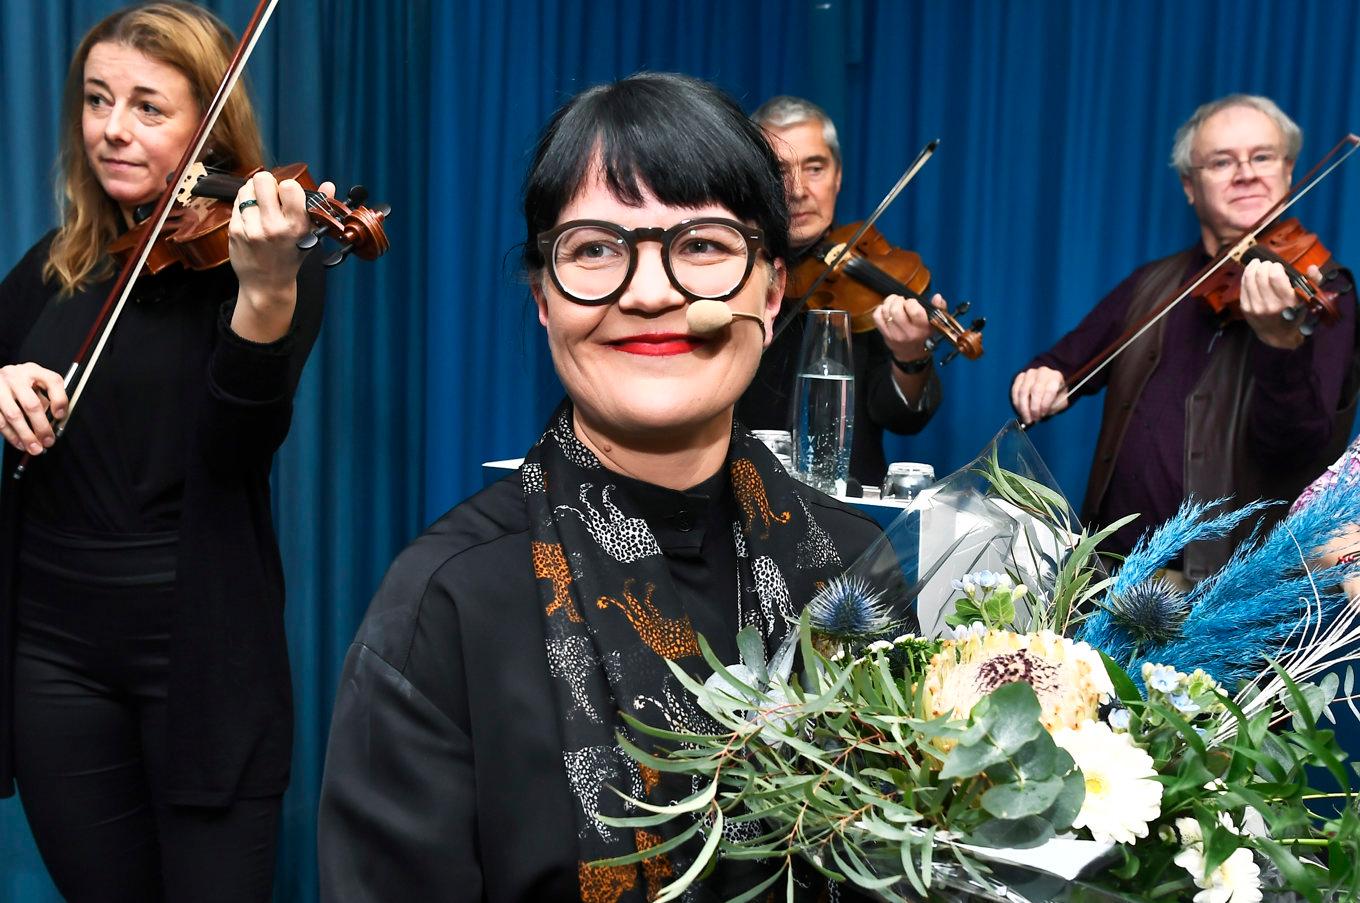 Ljuv musik för TCO-facken. Bilden från när Therese Svanström valdes som TCO-ordförande 2019. Arkivbild. Foto: Claudio Bresciani/TT